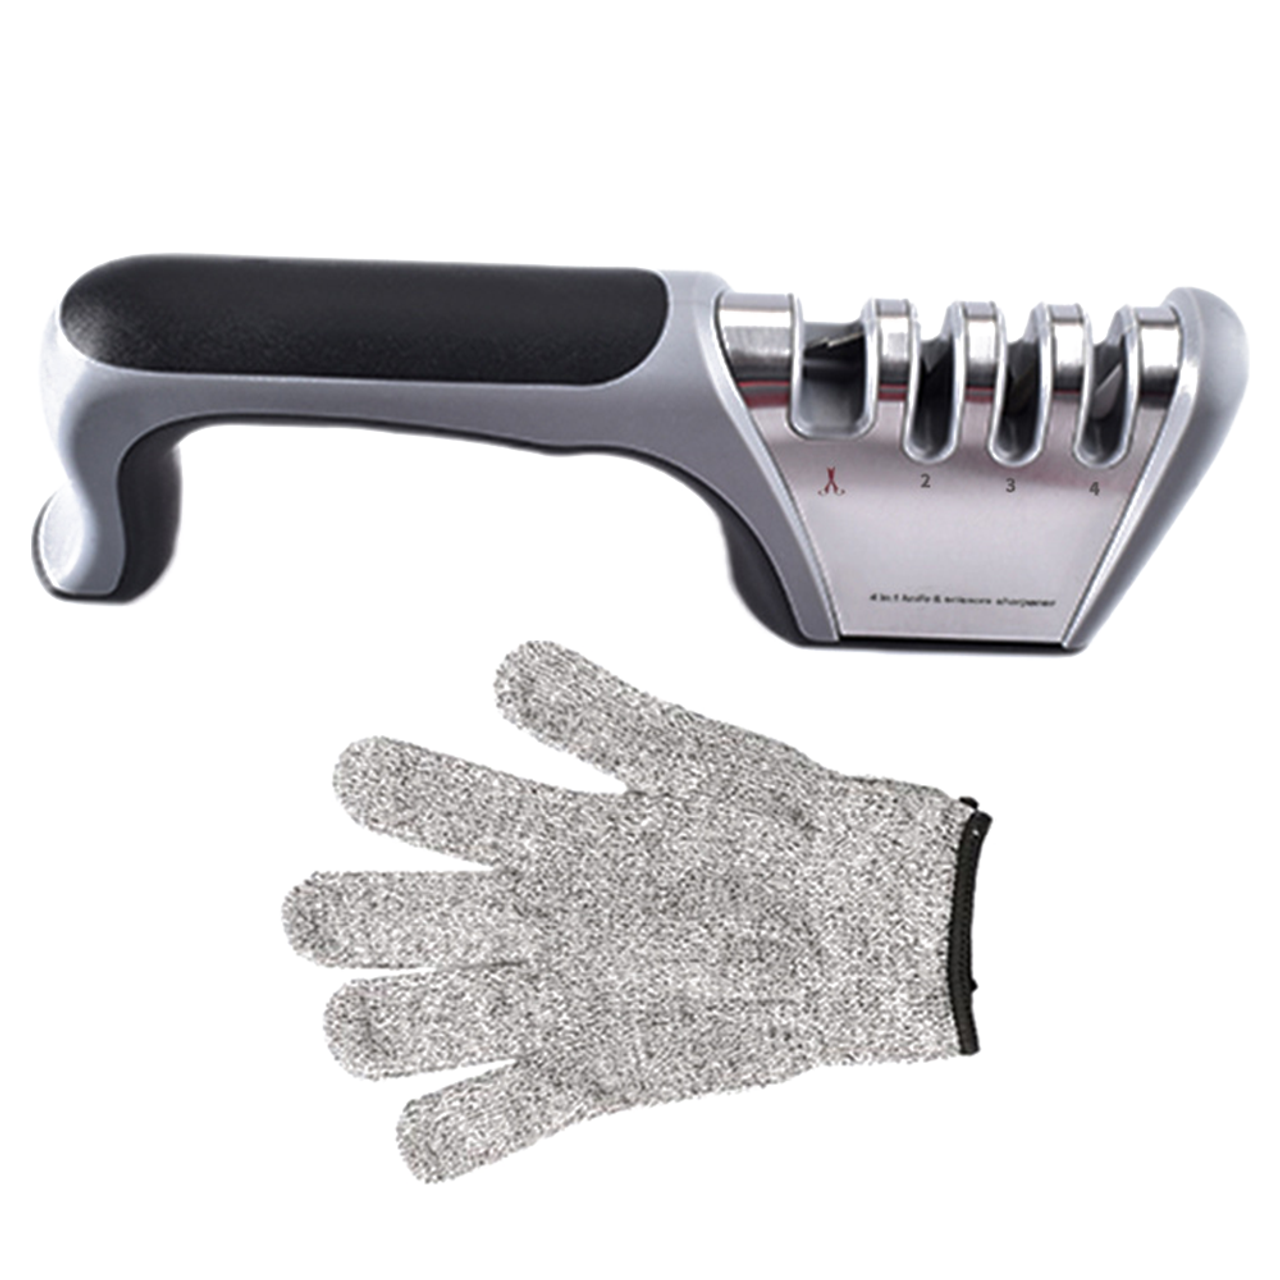 Diamond Kitchen Knife Sharpener & Scissors Sharpener With Safety Glove